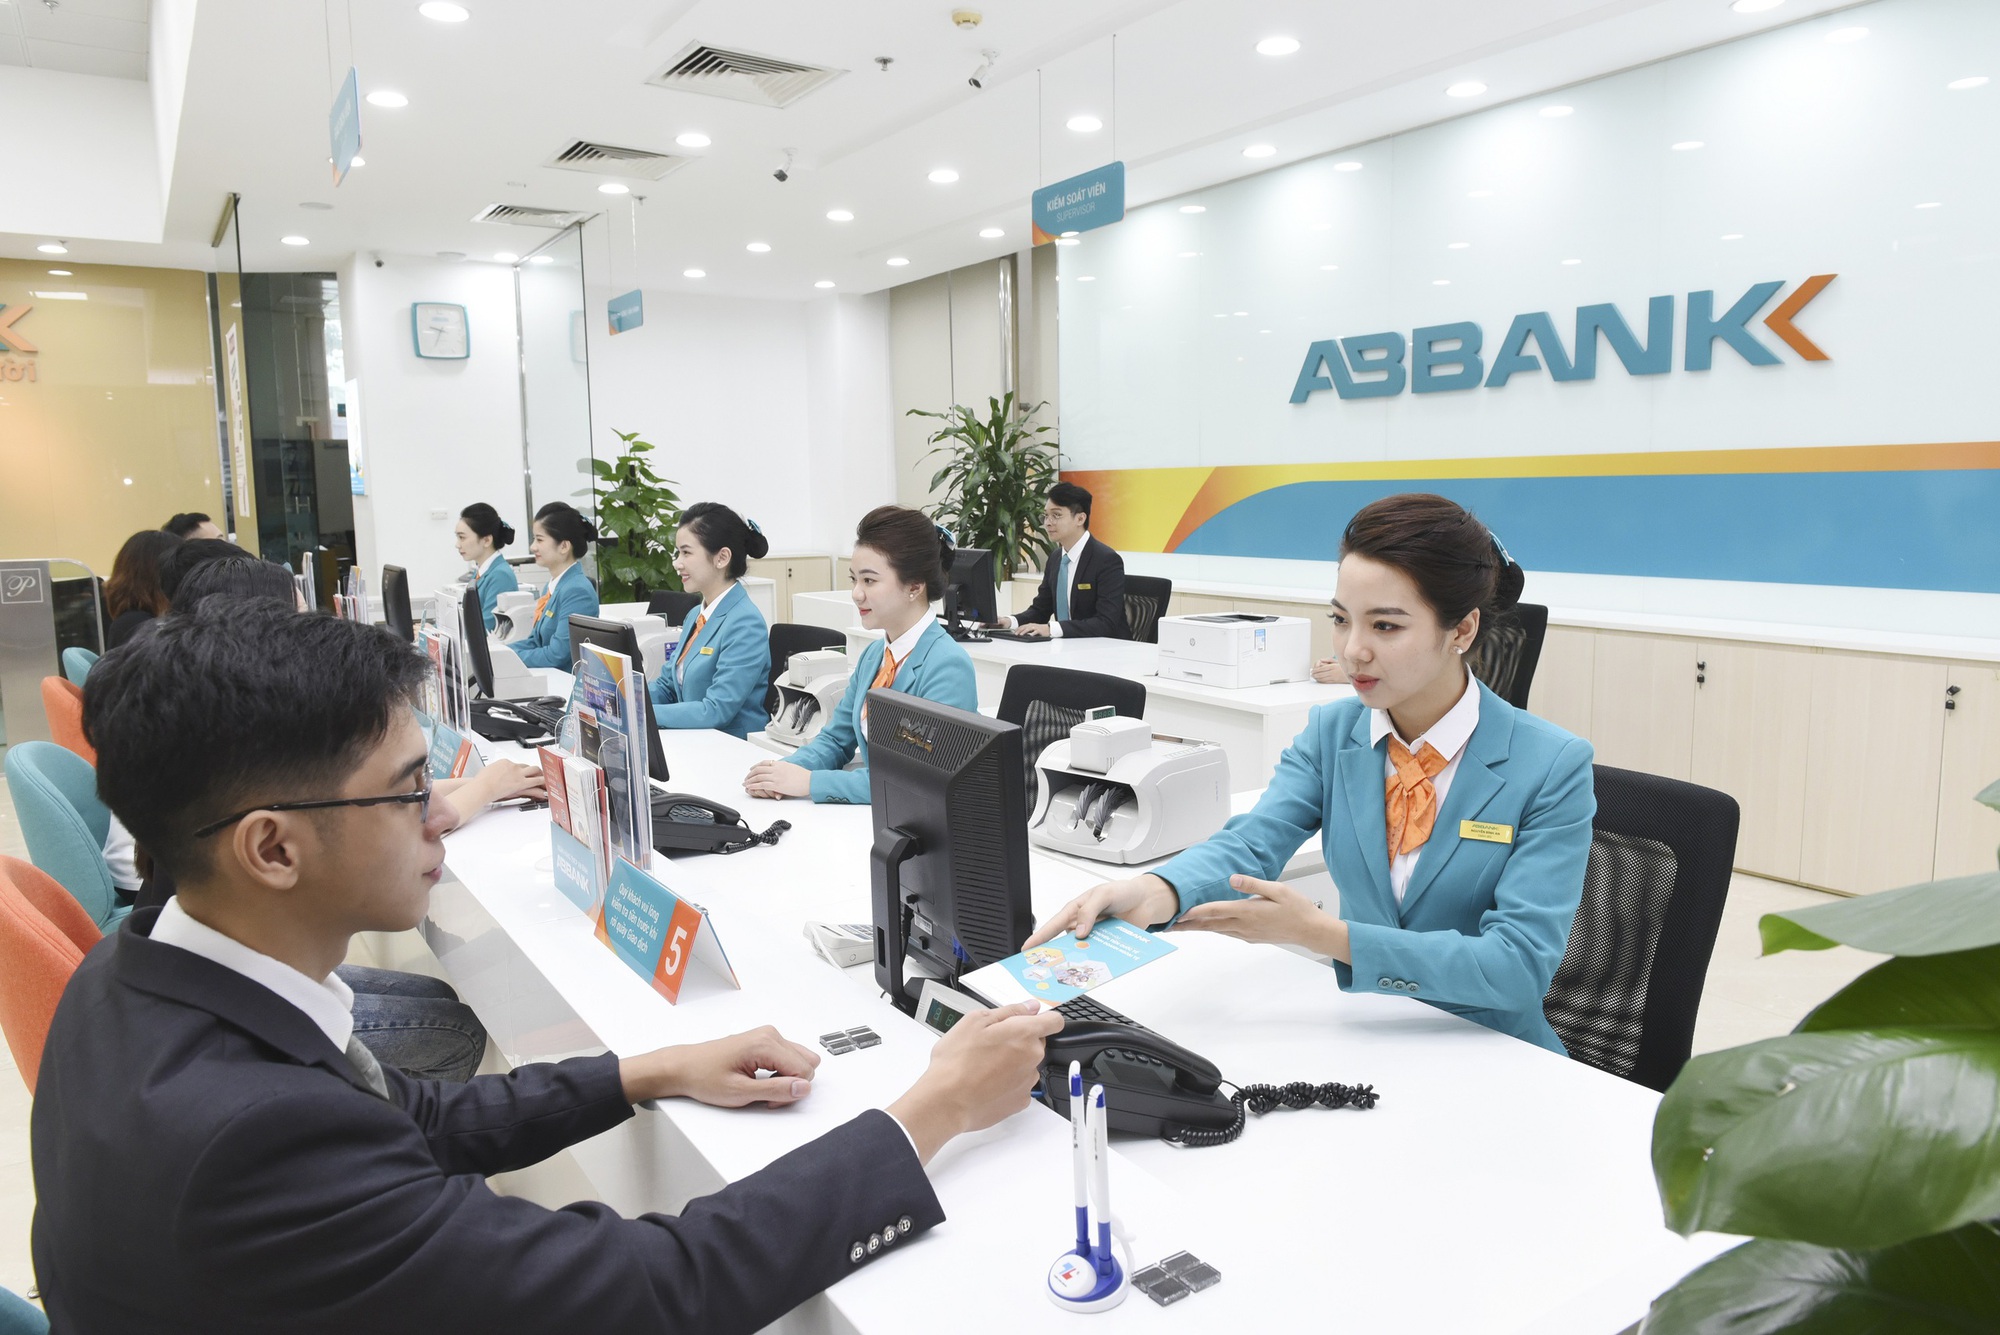 ABBANK là một ngân hàng TMCP có bề dày lịch sử hơn 30 năm và mạng lưới hoạt động 165 chi nhánh phục vụ hơn 1 triệu khách hàng trên toàn quốc